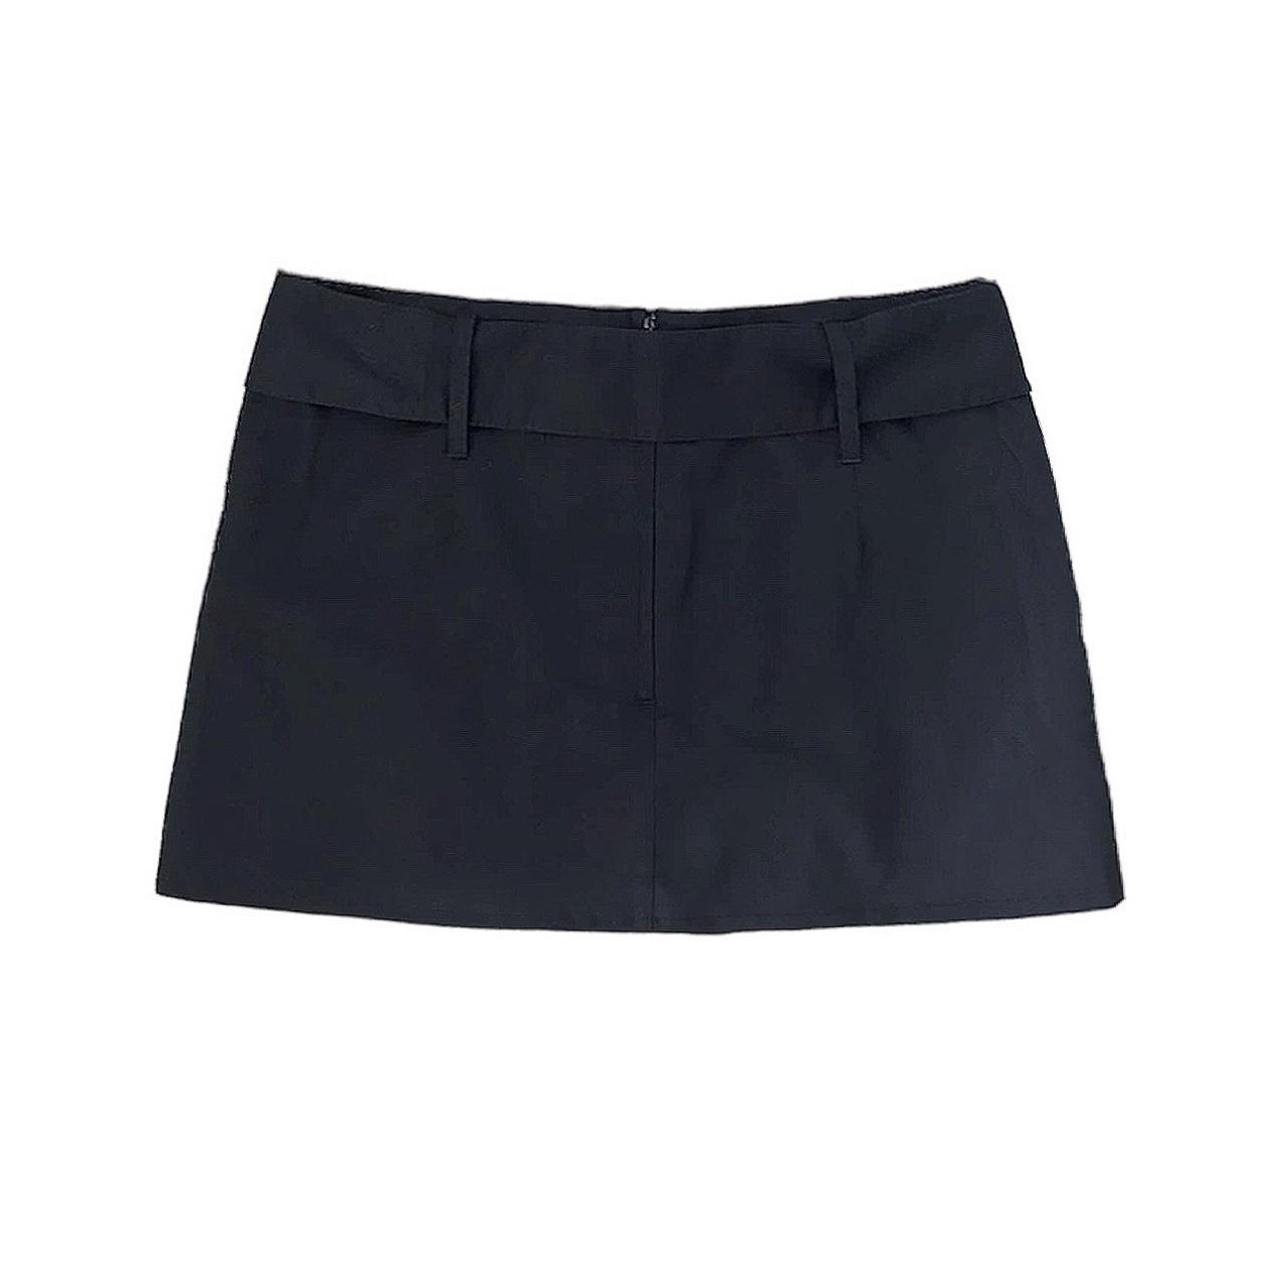 Black pleated mini skirt - vintage y2k mid rise... - Depop